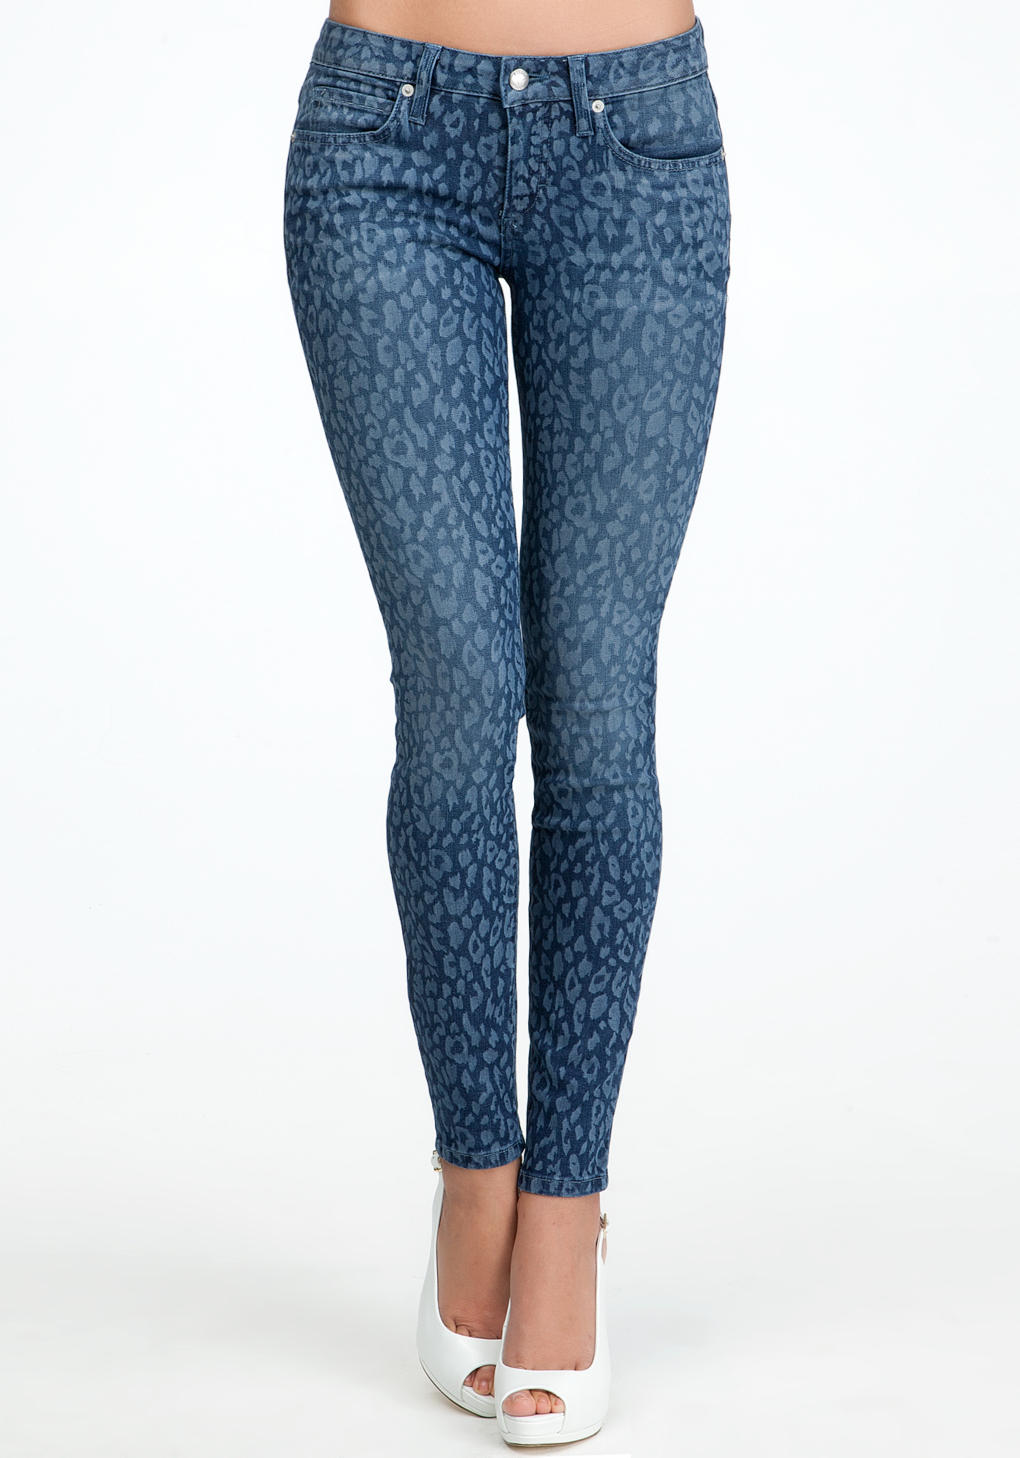 blue leopard jeans